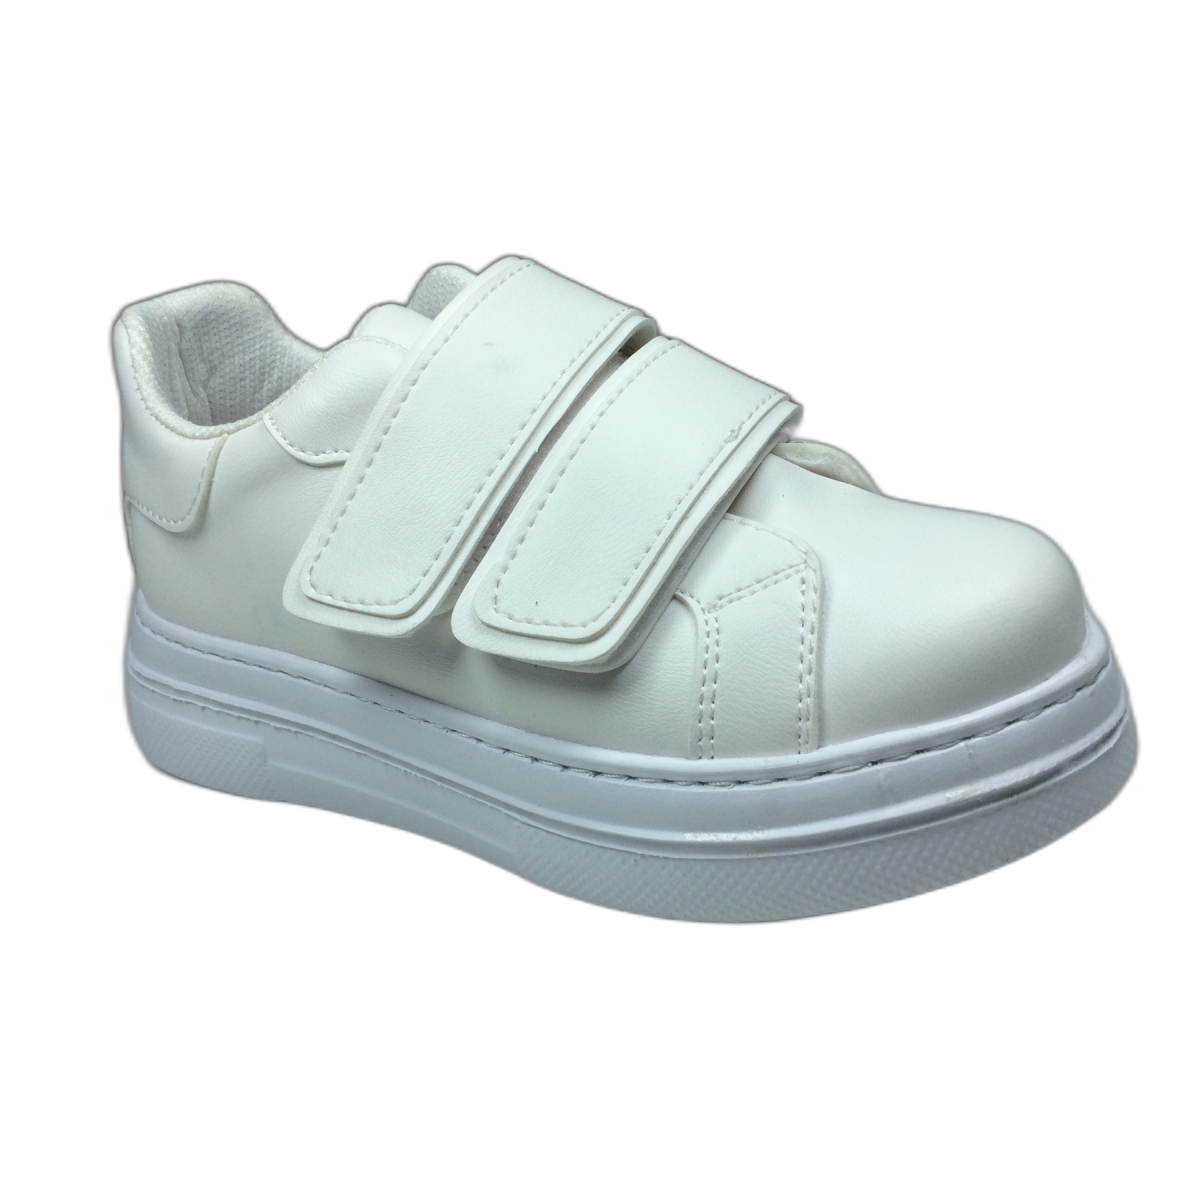 Ortopedikal 1087 Kız Çocuk Beyaz Cırtlı Sneaker Spor Ayakkabı